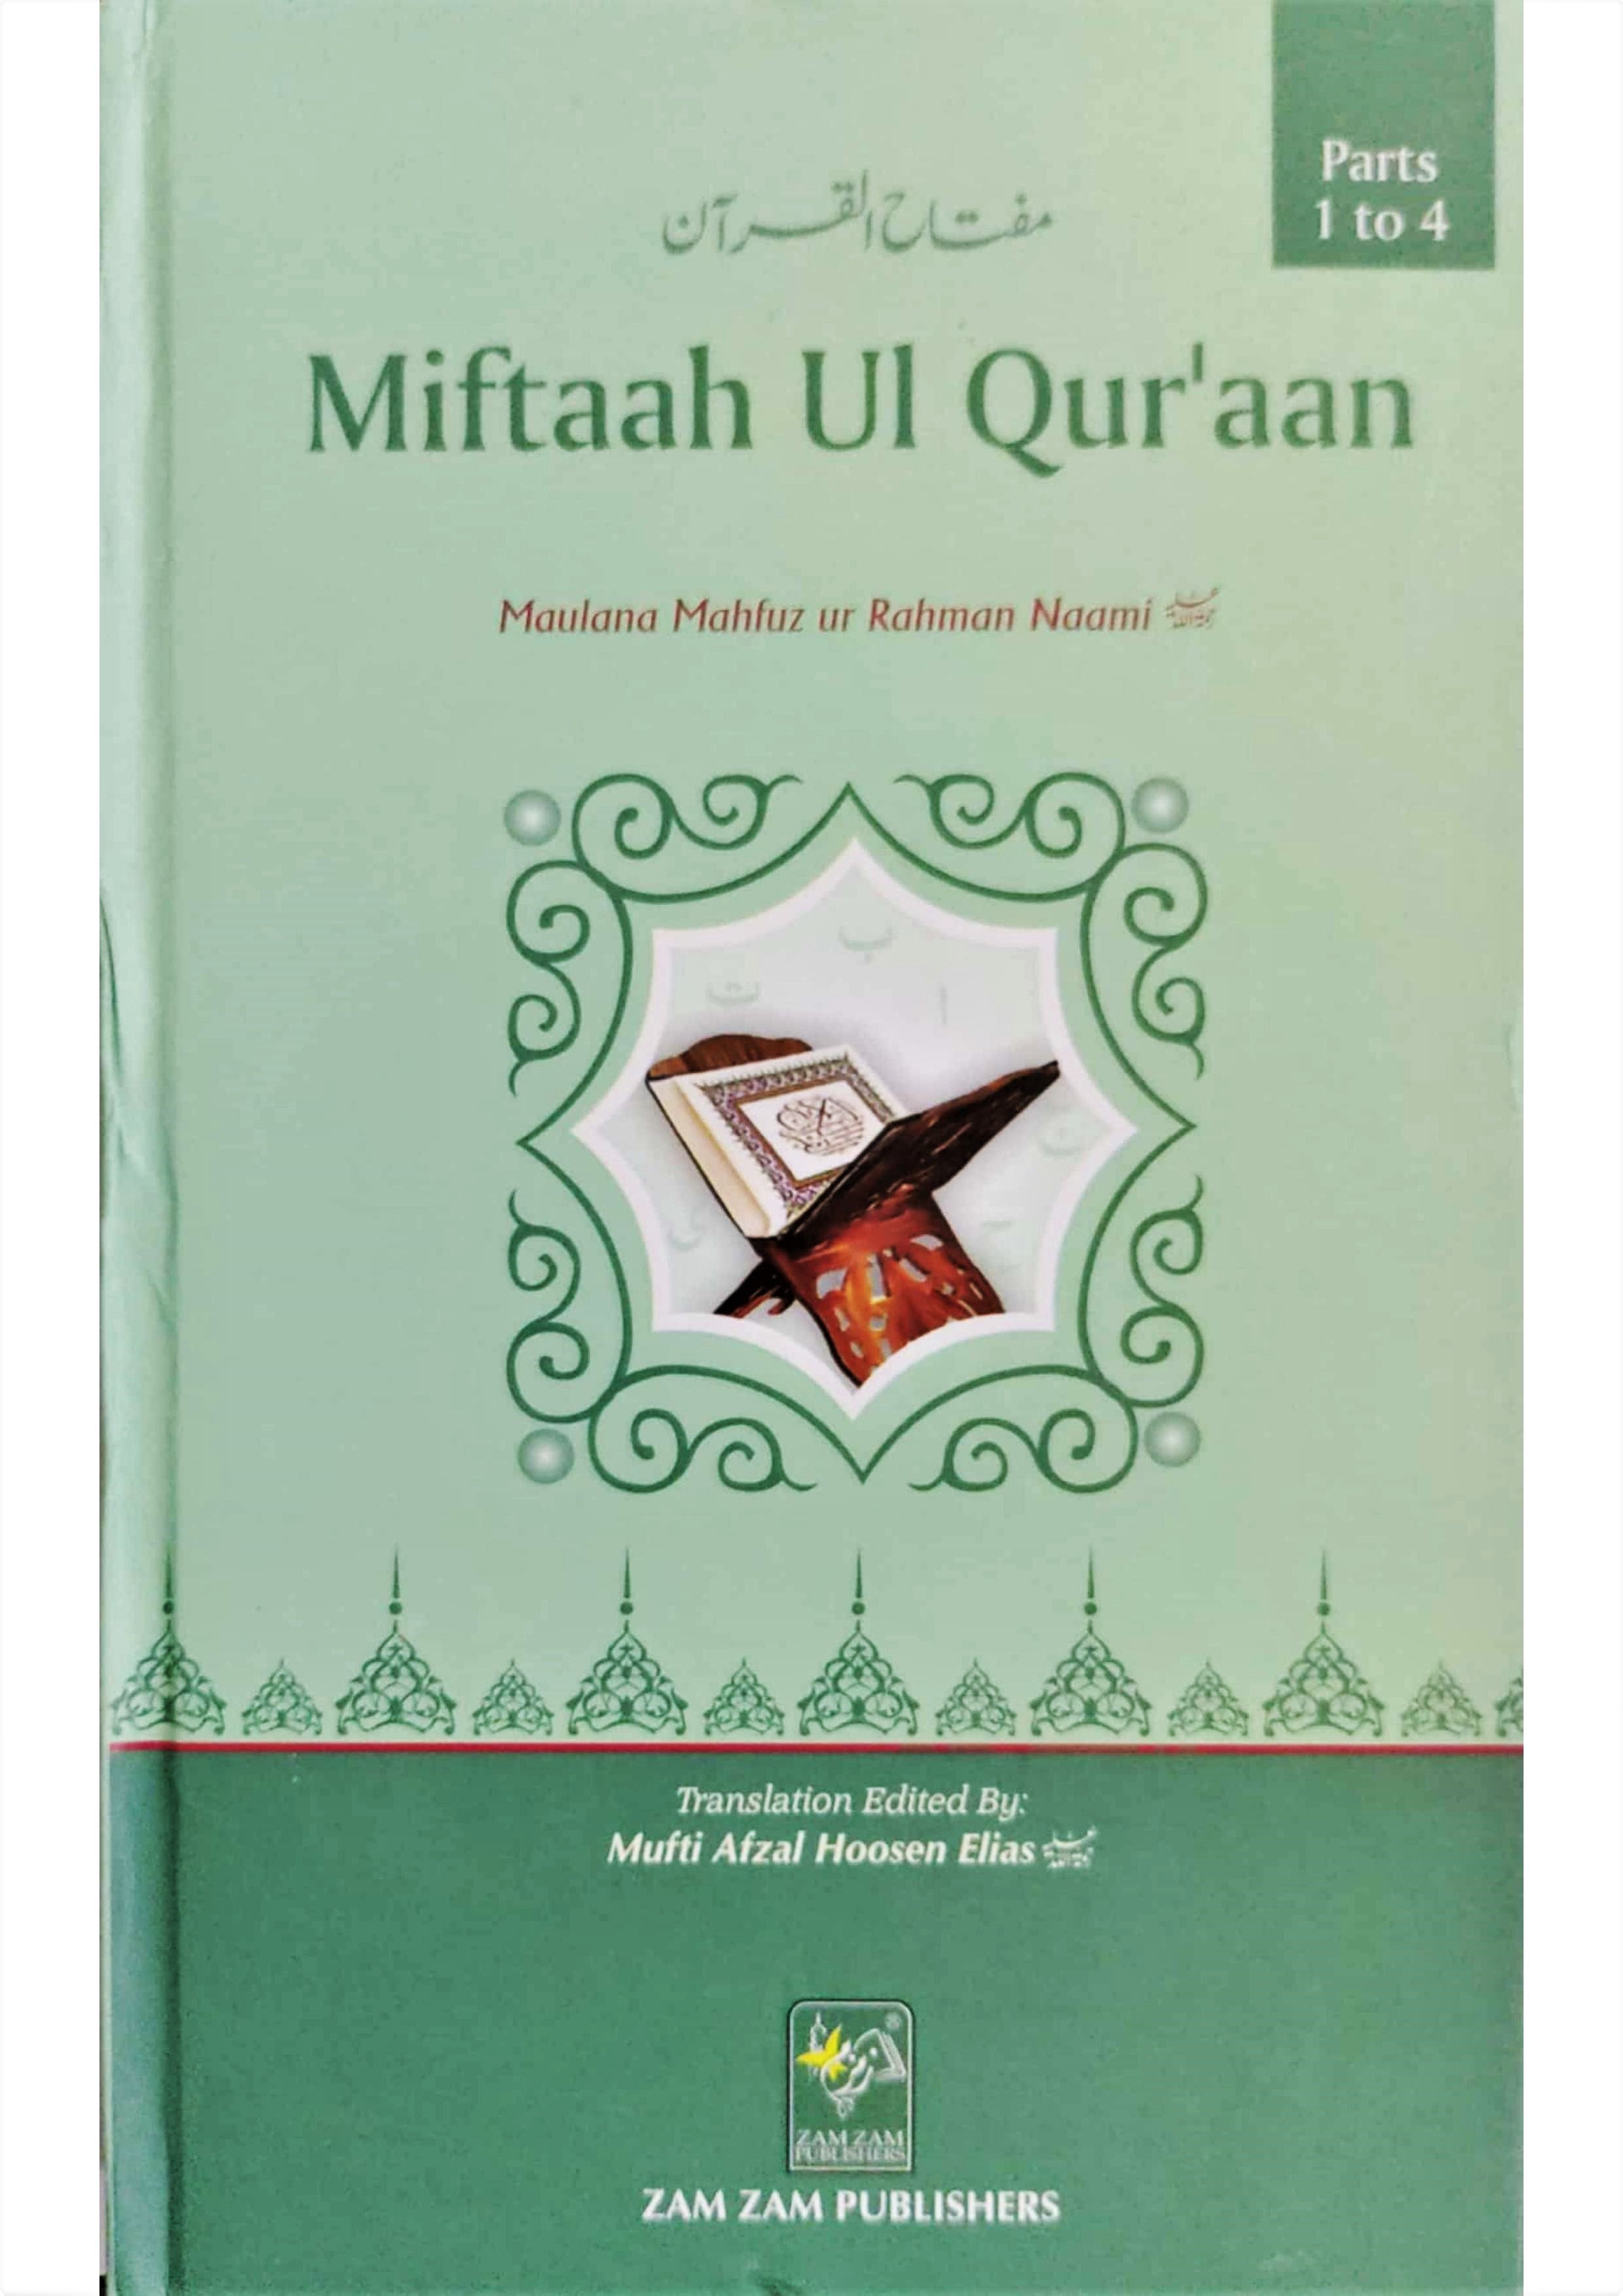 Miftaah ul Qur'aan